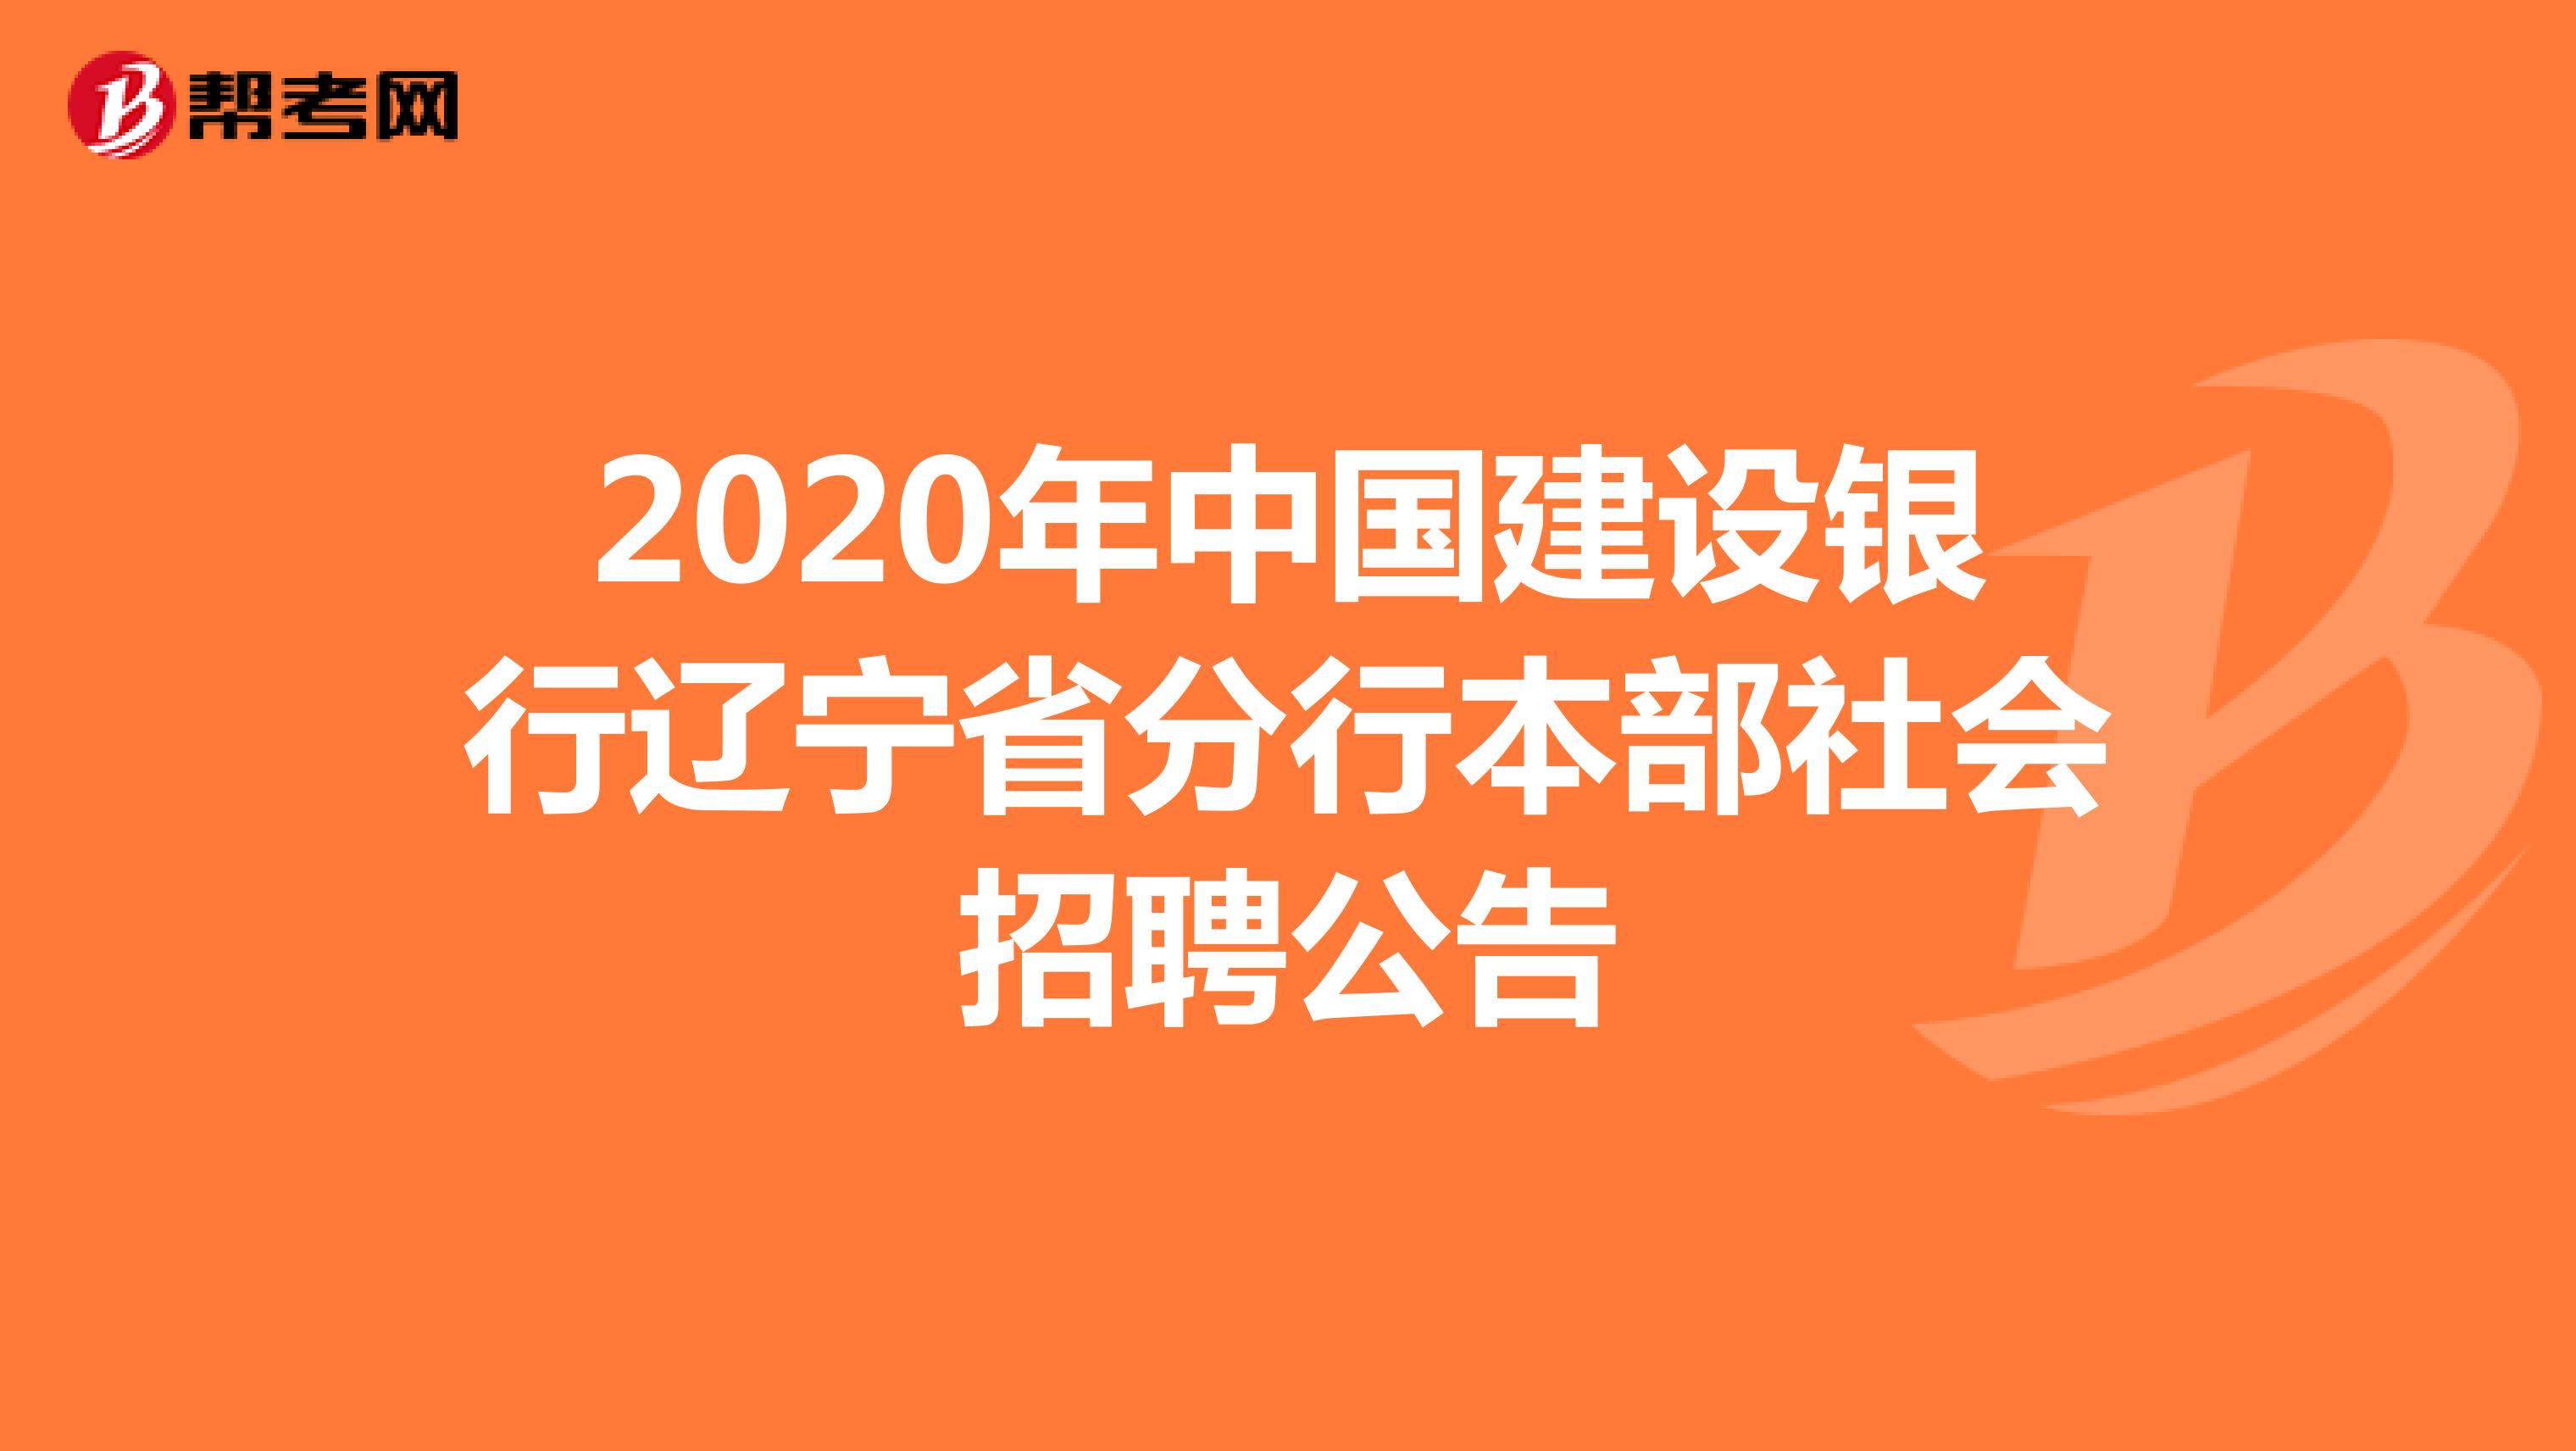 2020年中国建设银行辽宁省分行本部社会招聘公告